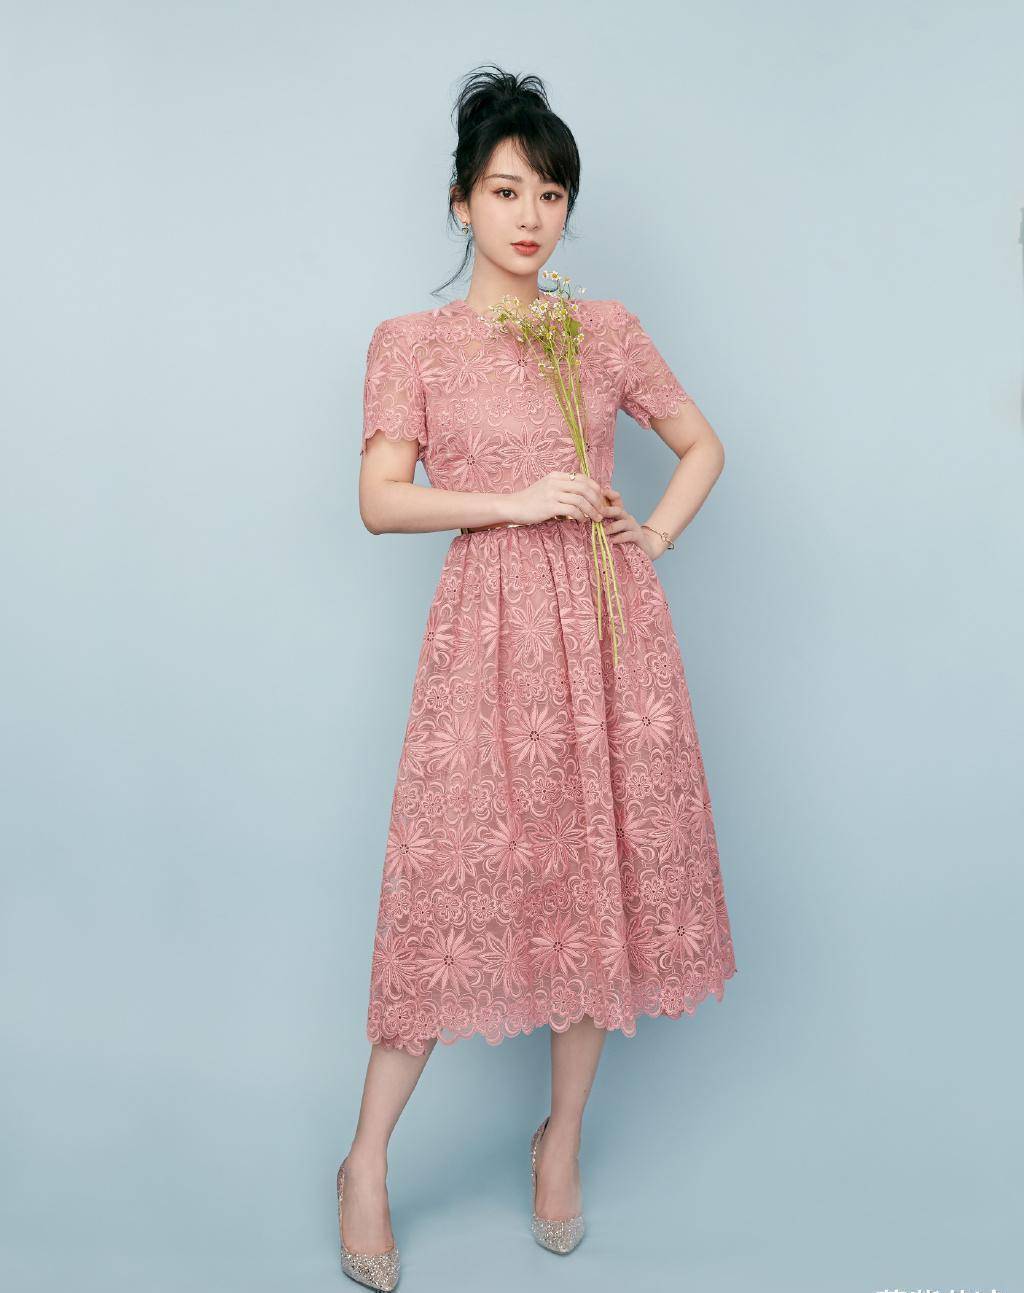 杨紫桃粉色长裙图片